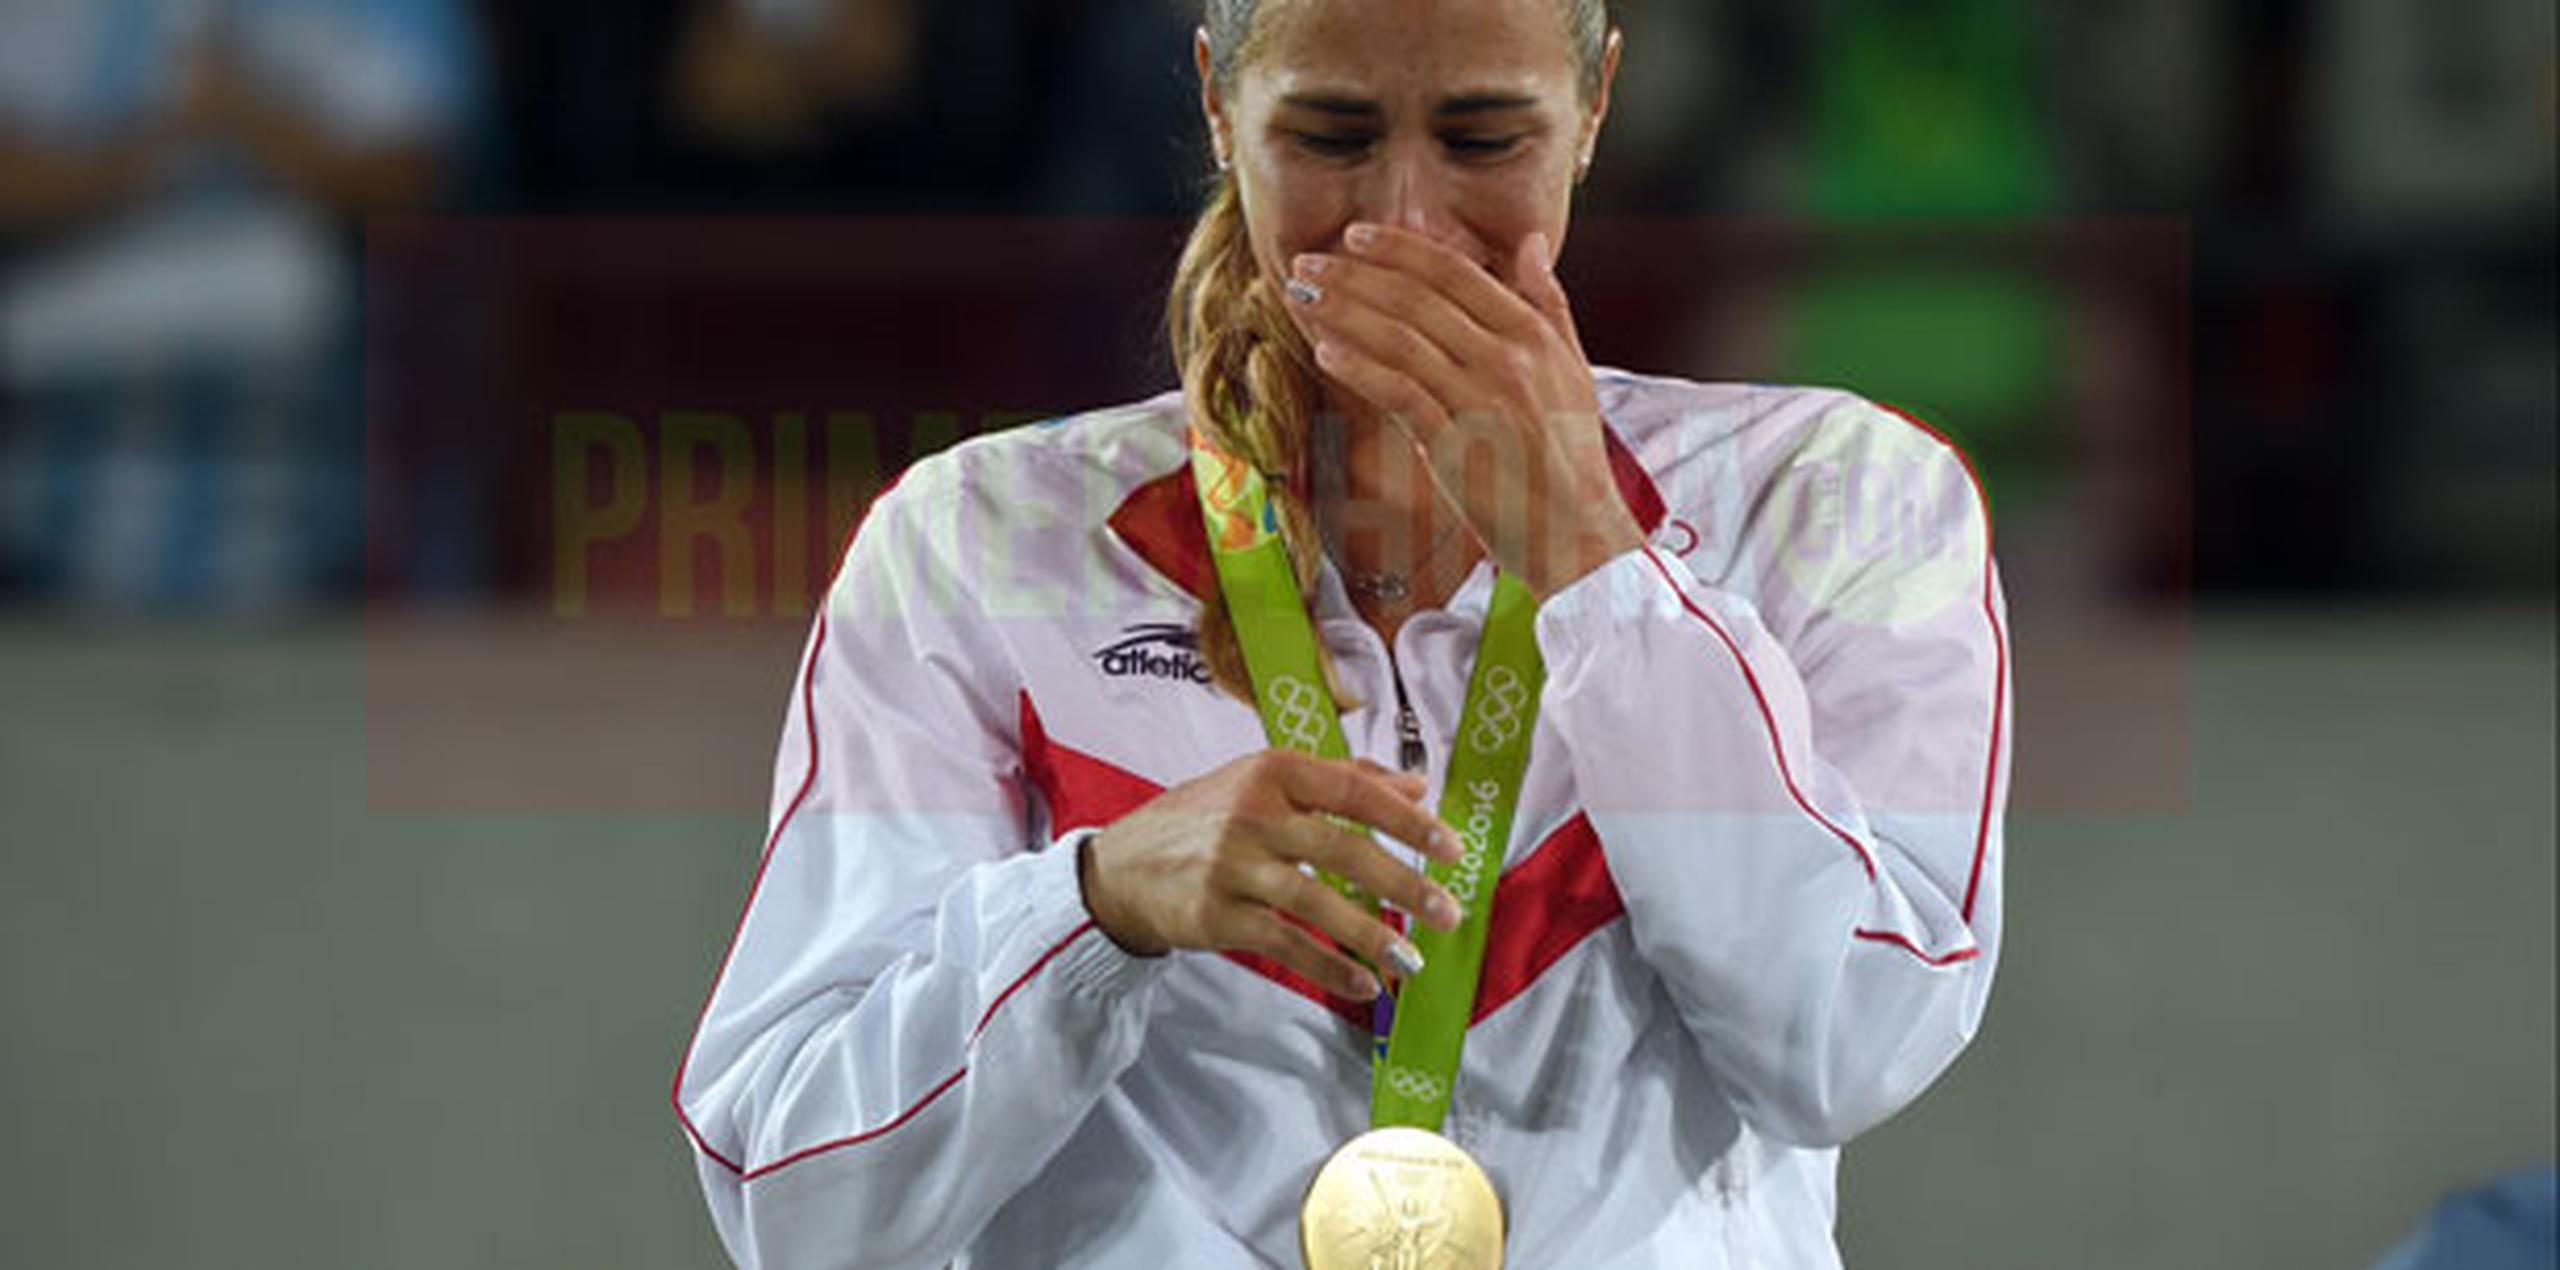 Mónica Puig le dio la primera medalla de oro olímpica a Puerto Rico desde que la Isla debutó en los Juegos de Londres en 1948. (andre.kang@gfrmadia.com)
